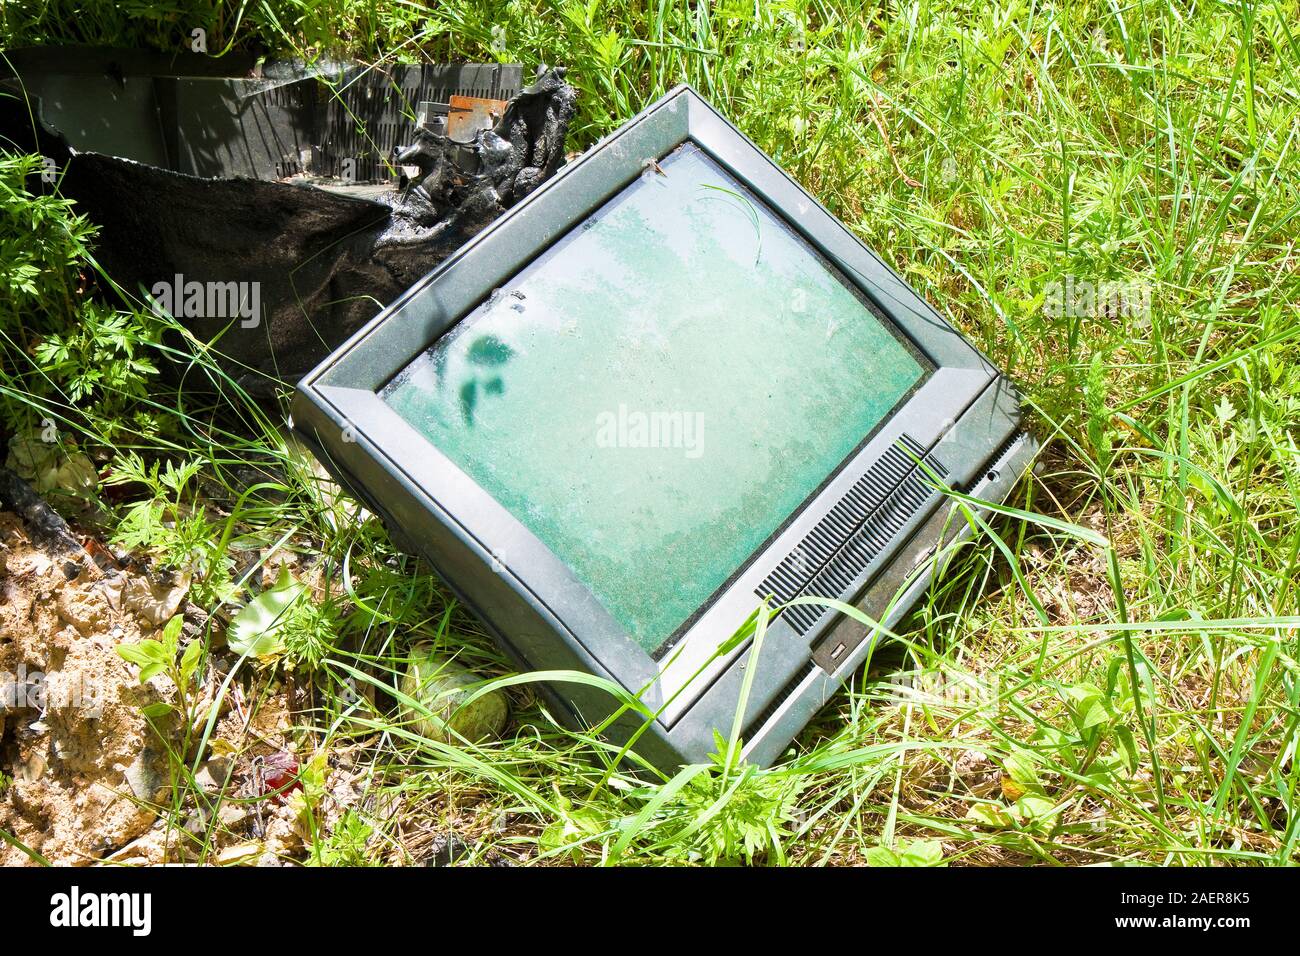 Alte Fernseher CRT verlassen in eine illegale Deponie-getonten Bild Stockfoto